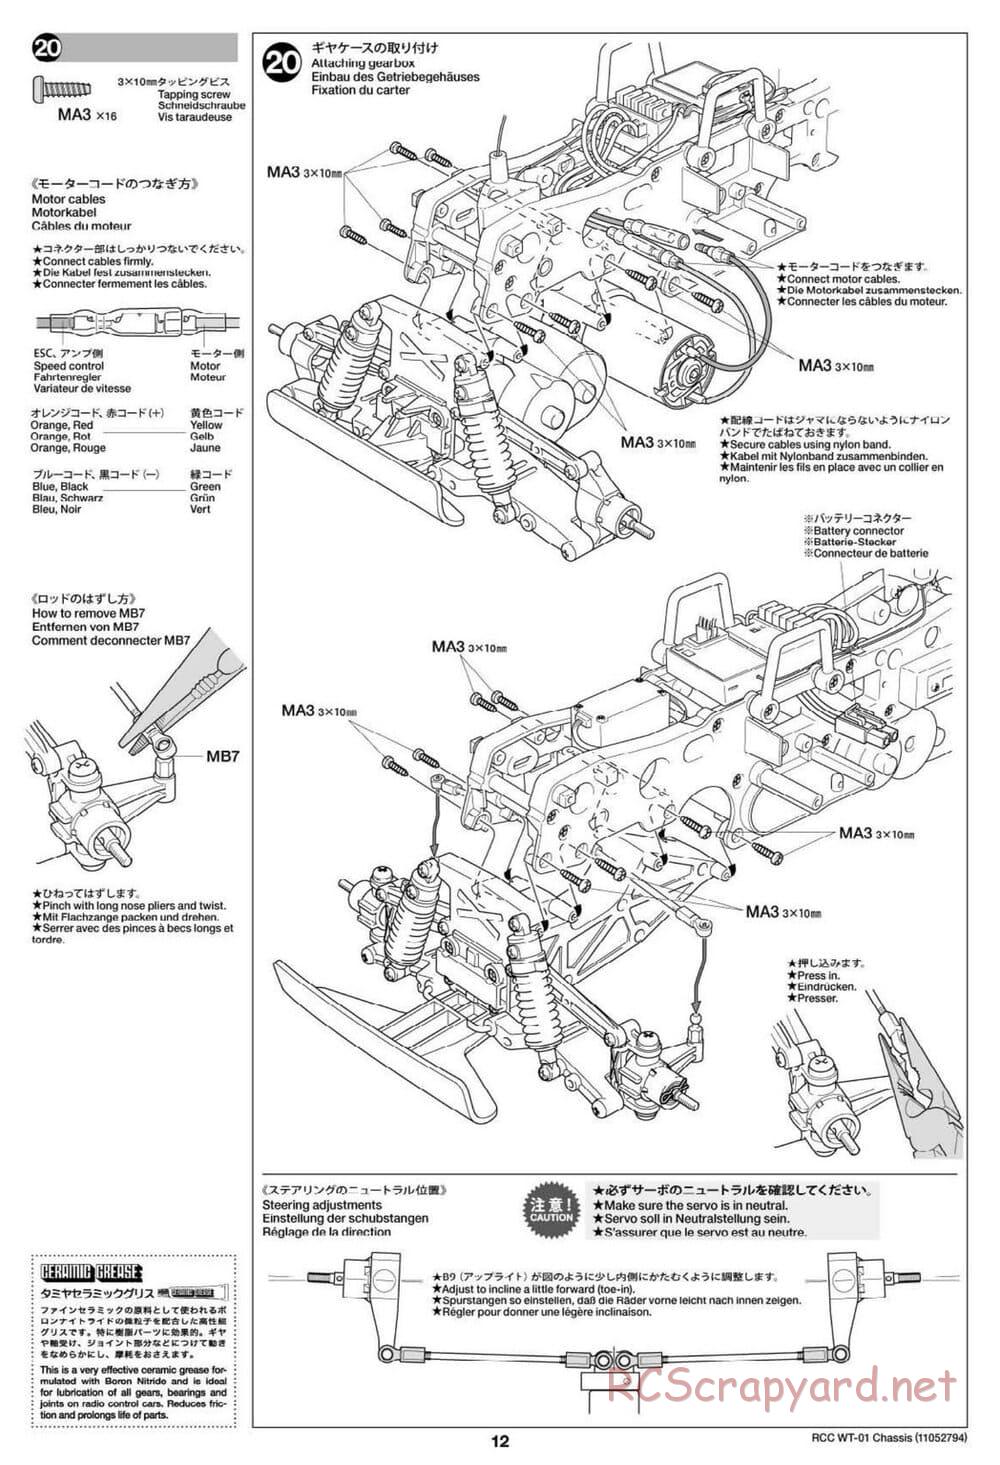 Tamiya - WT-01 Chassis - Manual - Page 12